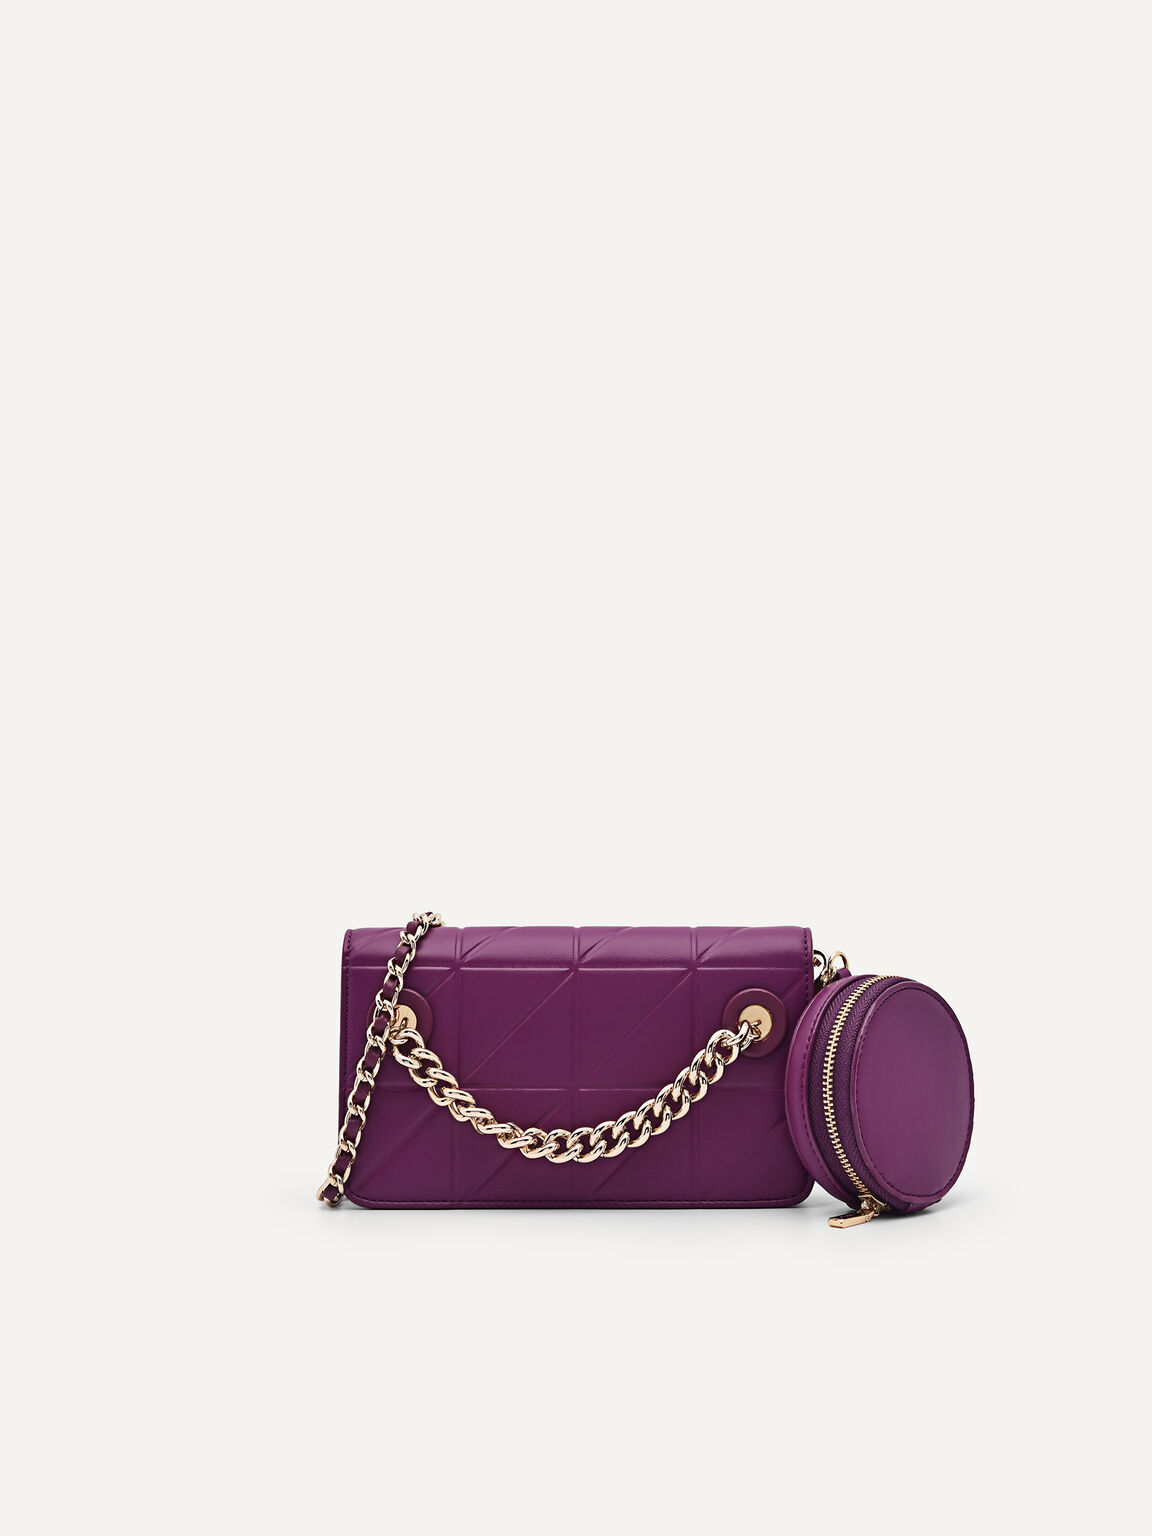 手機袋配鏈條帶, 紫色